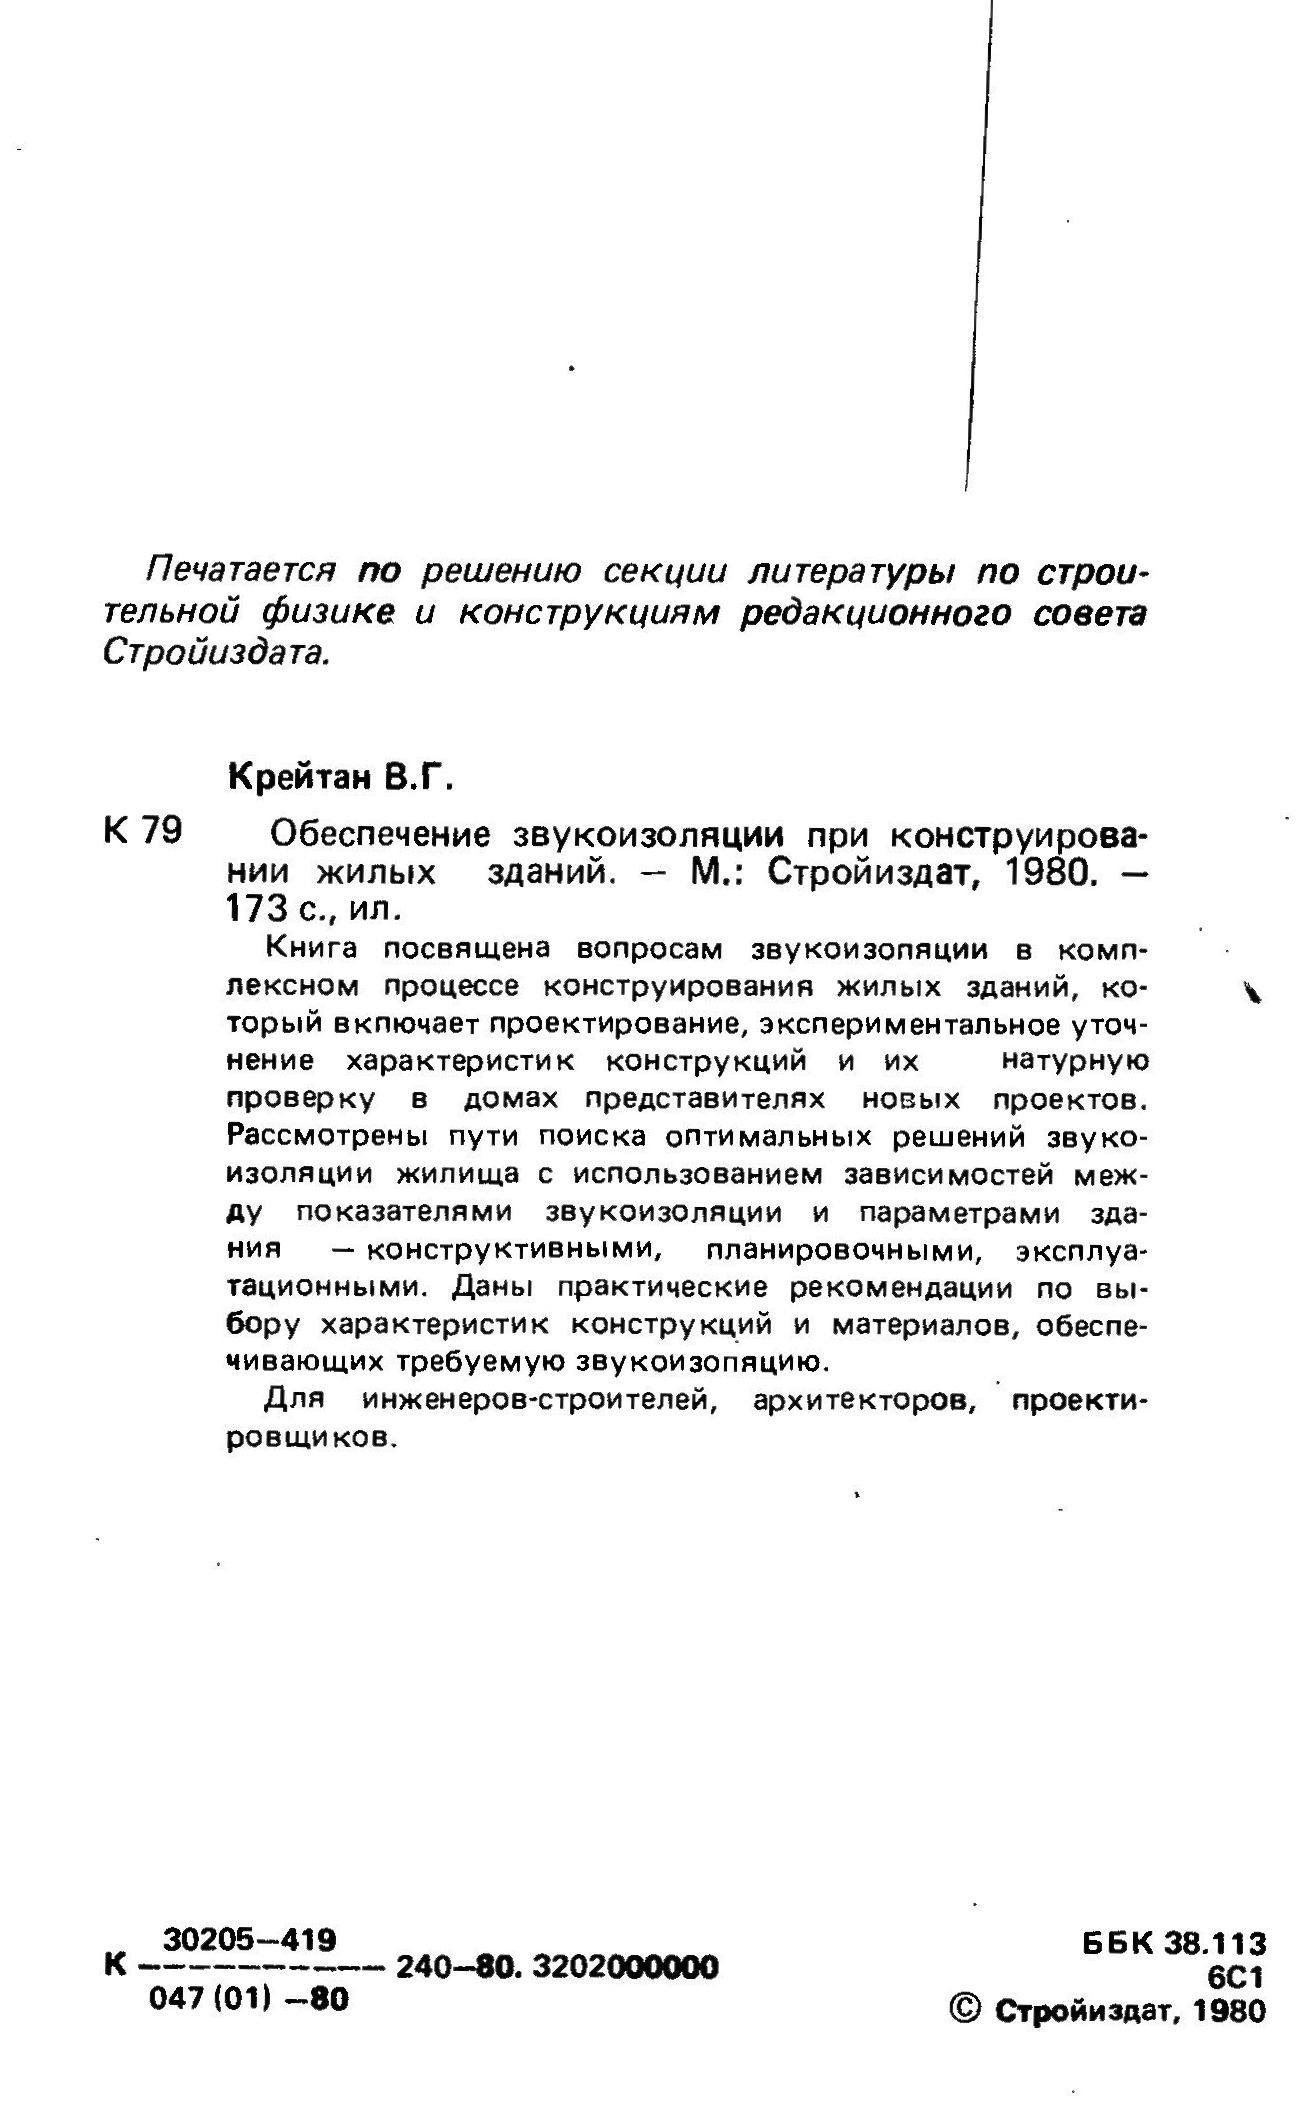 Обеспечение звукоизоляции при конструировании жилых зданий / В. Г. Крейтан. — Москва : Стройиздат, 1980